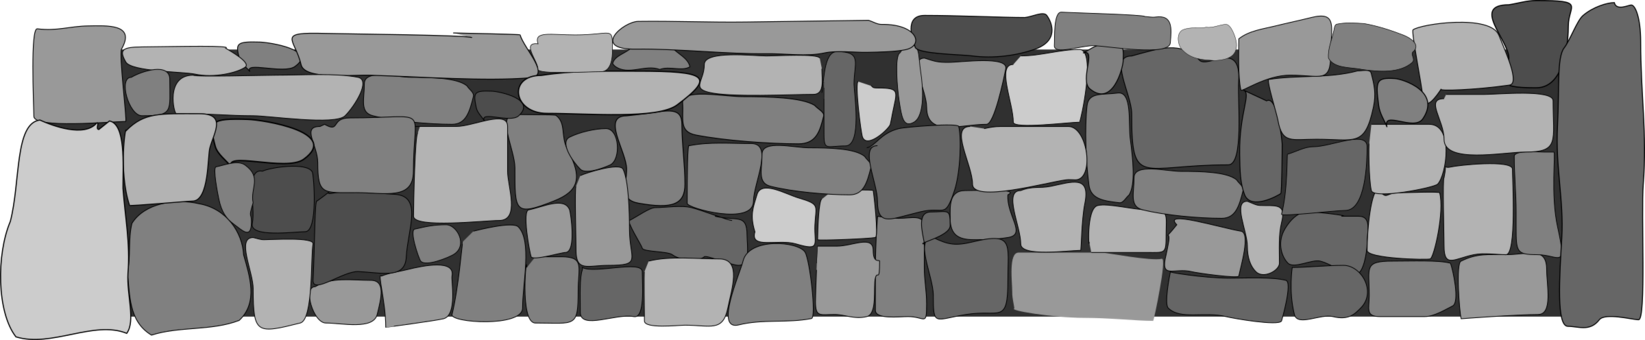 Immagine del PNG della parete di pietra del mattone